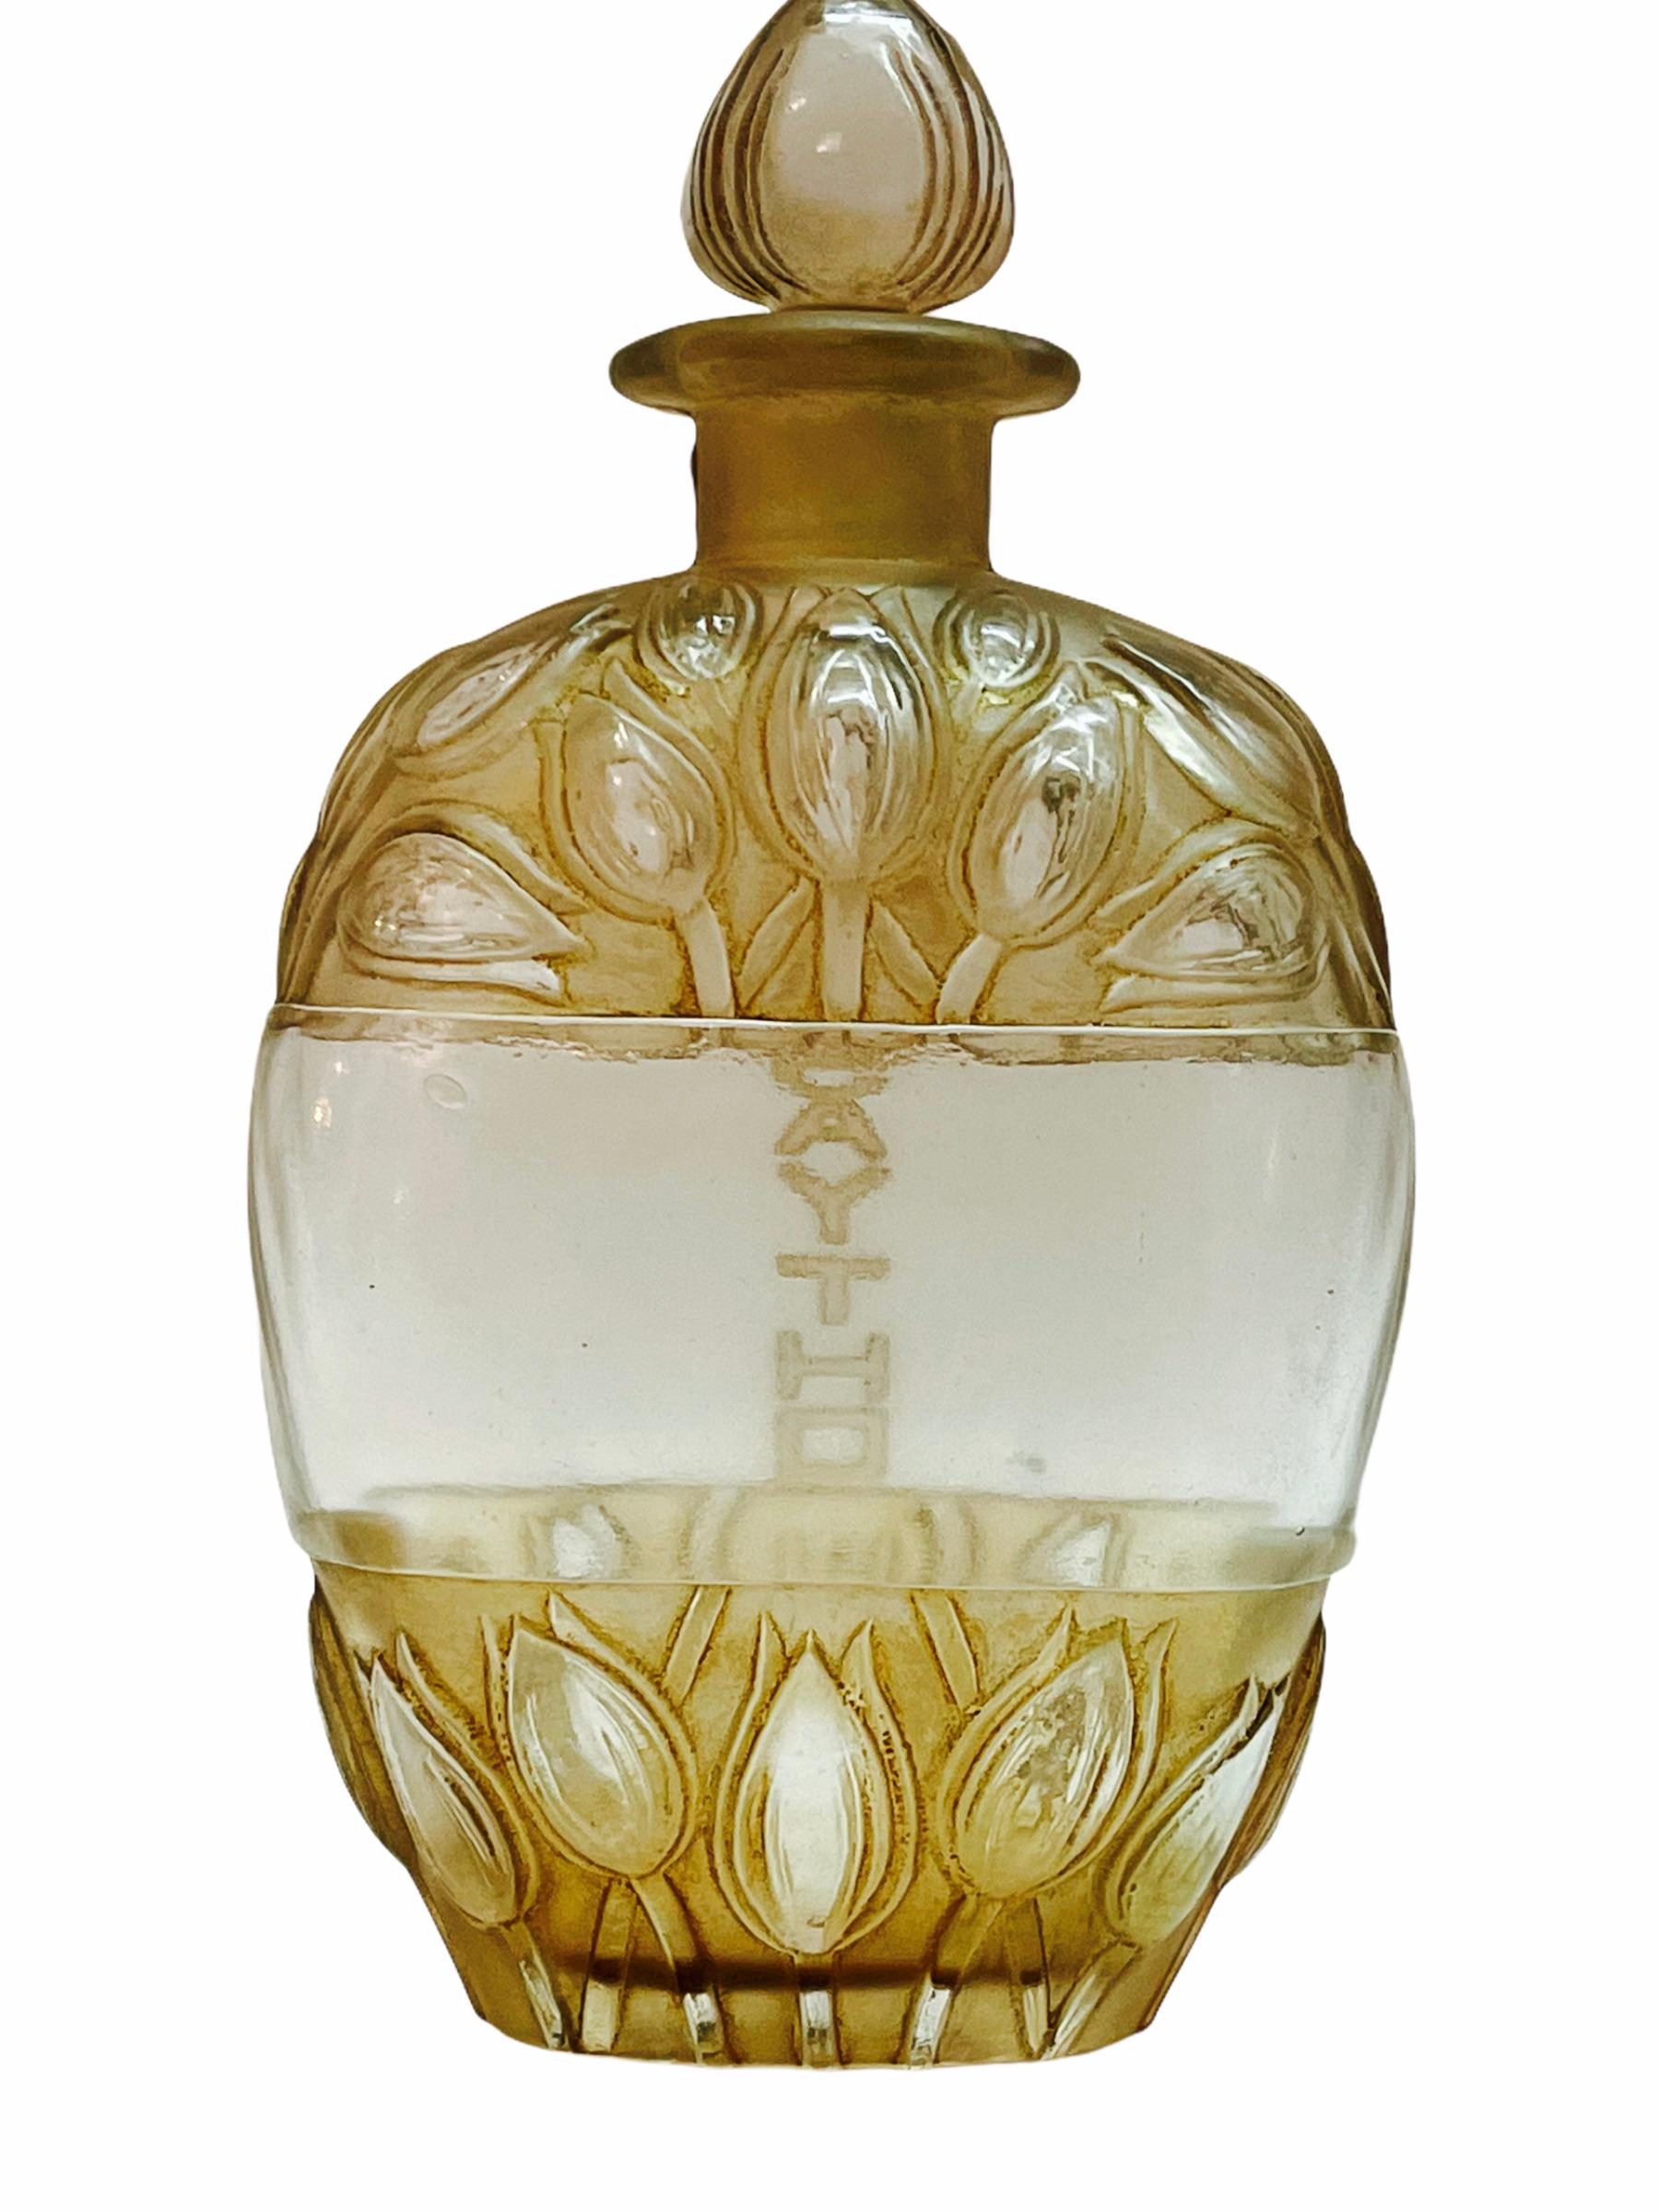 Molded 1928 Rene Lalique French Lilac Jaytho Jay-Thorpe Perfume Bottle Sepia Patina